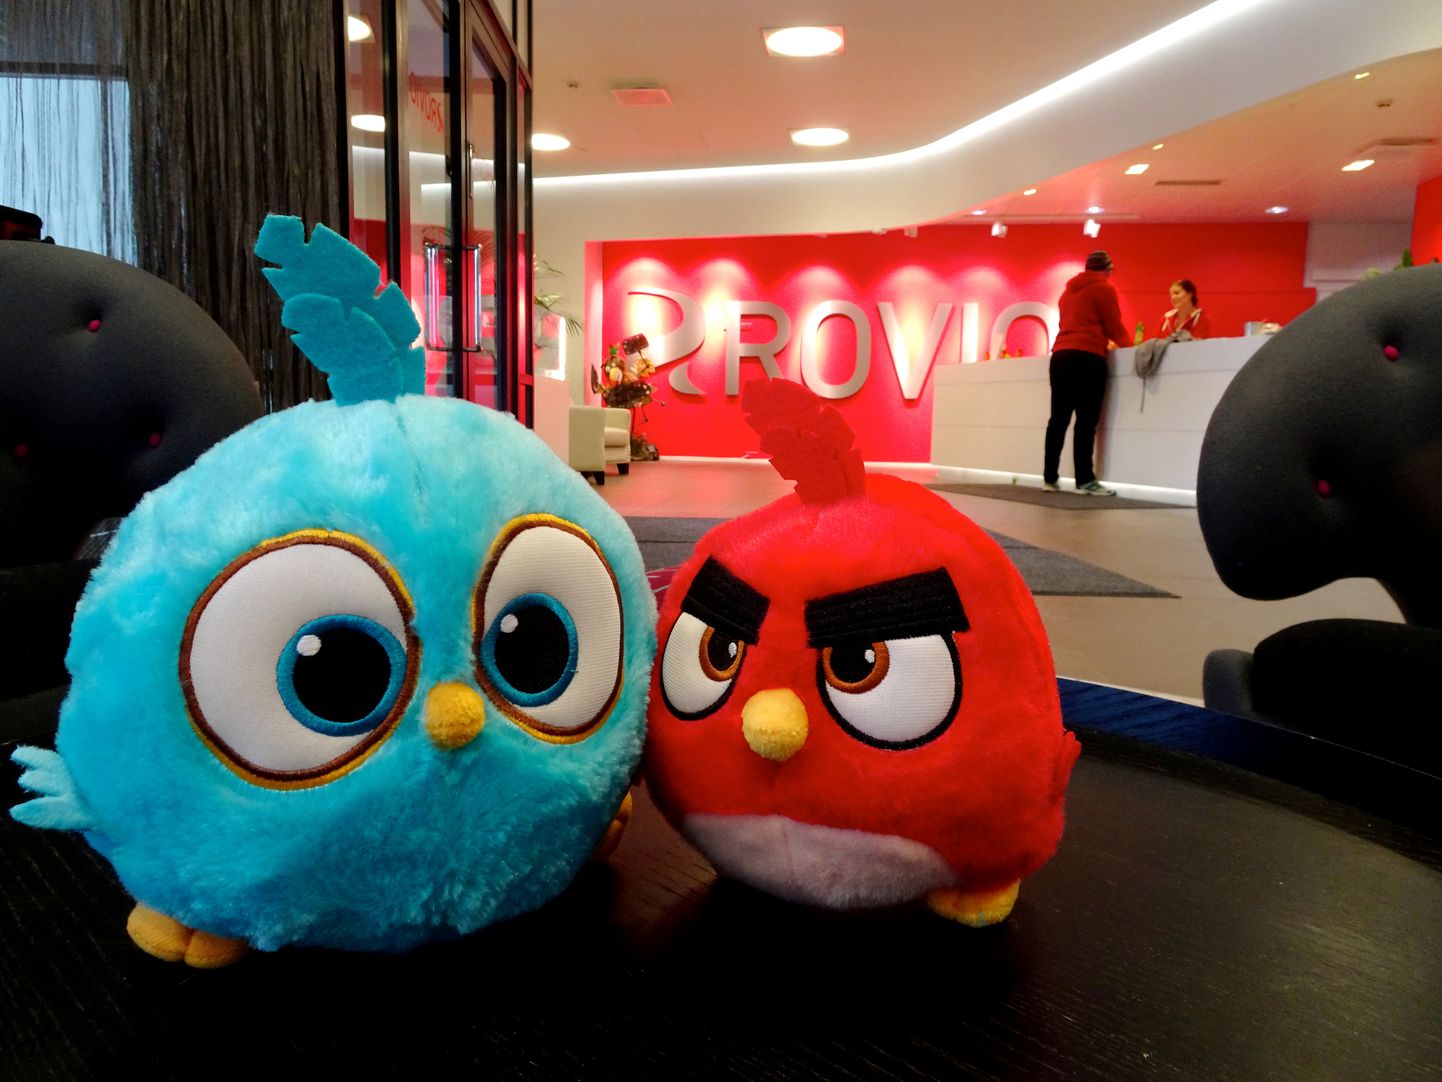 Angry Birds mängu tegelaskujud Rovio Espoo peakontoris.